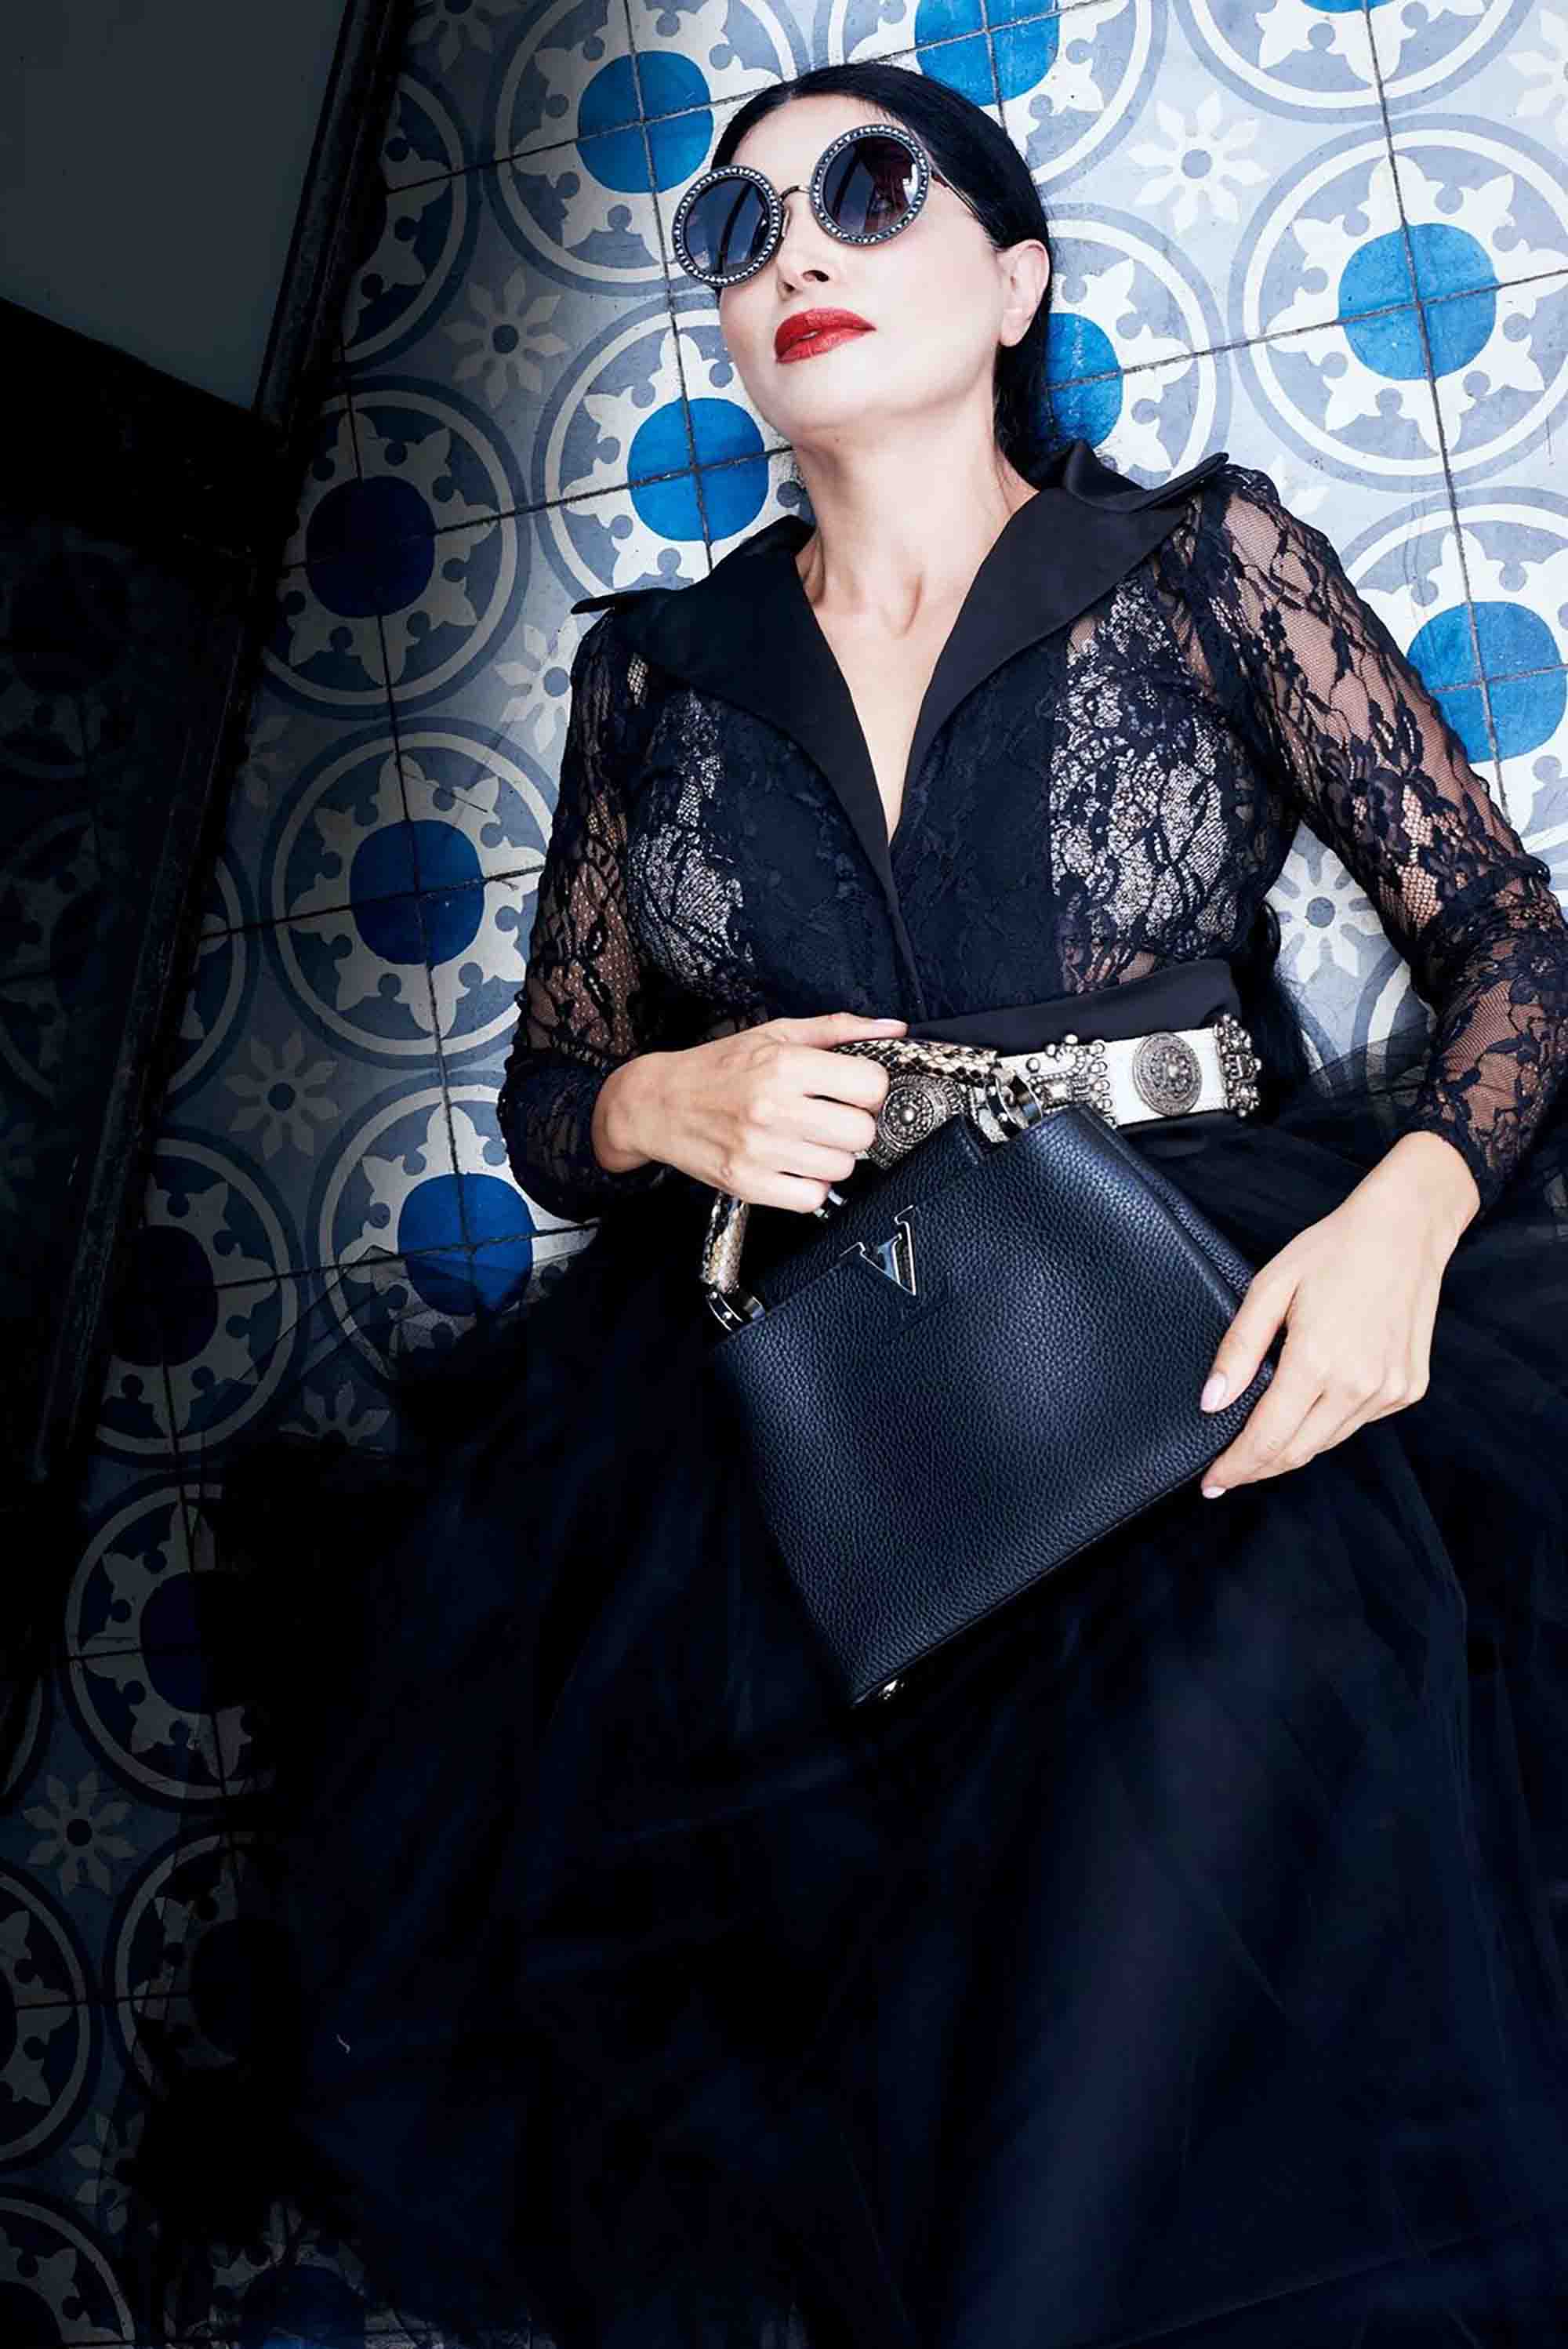 אופנה, תיק versace סטיילינג סאלי שוק הפשפשים צילום Kim kandler